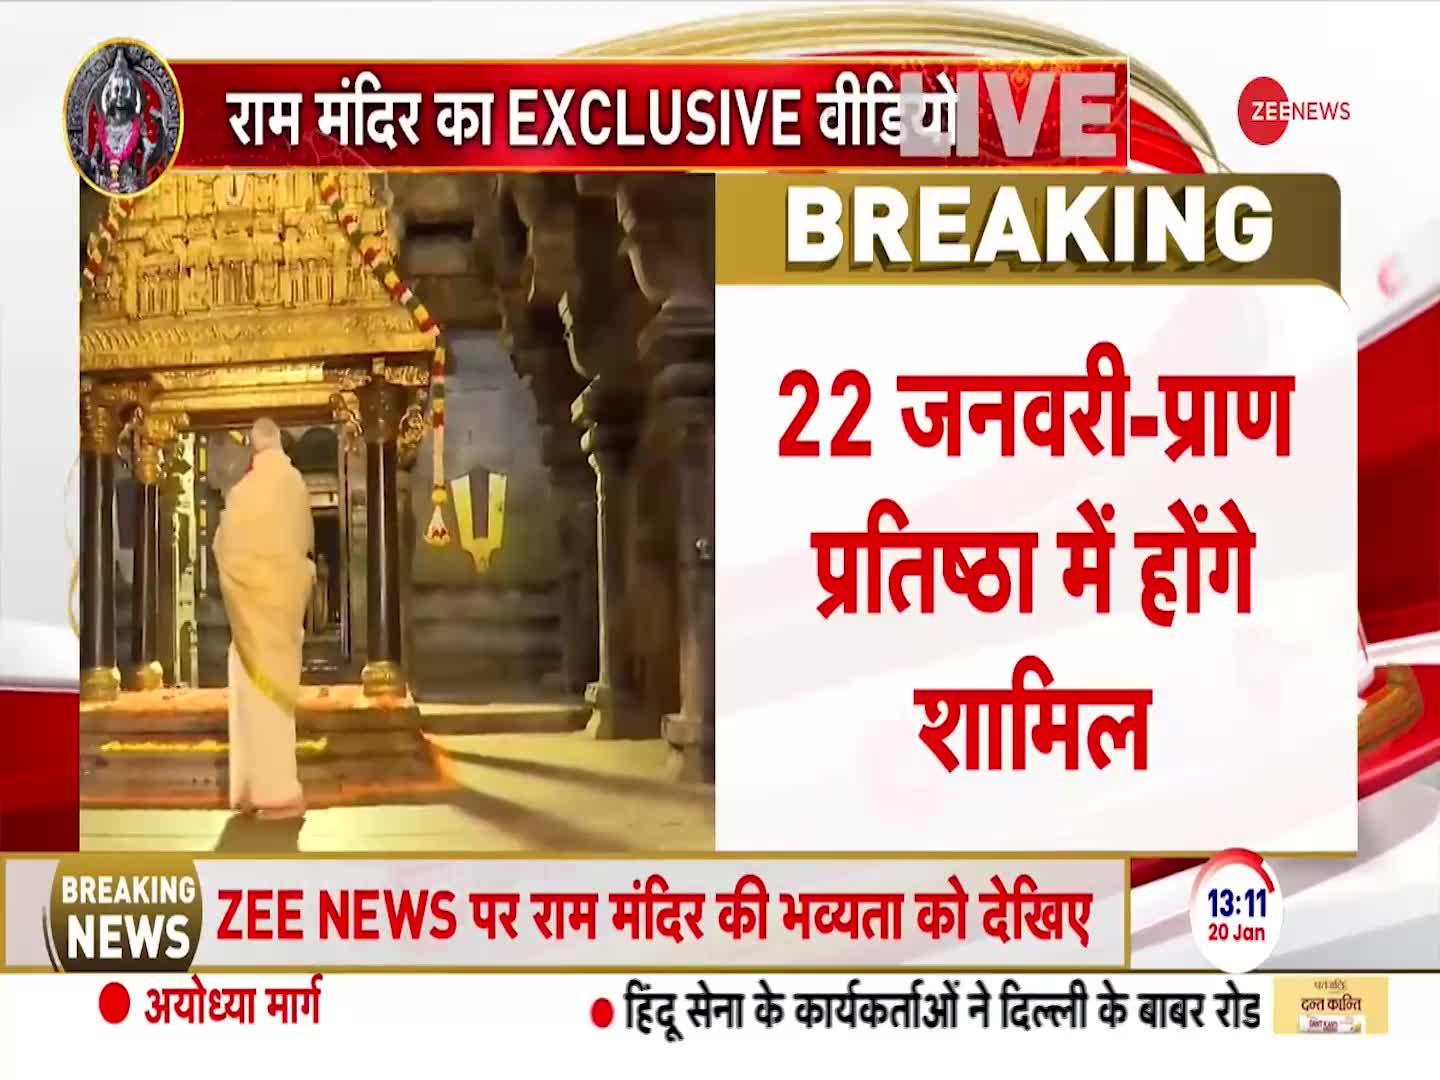 Ayodhya Ram Mandir: राम मंदिर की ये तस्वीर आपने नहीं देखी होगी